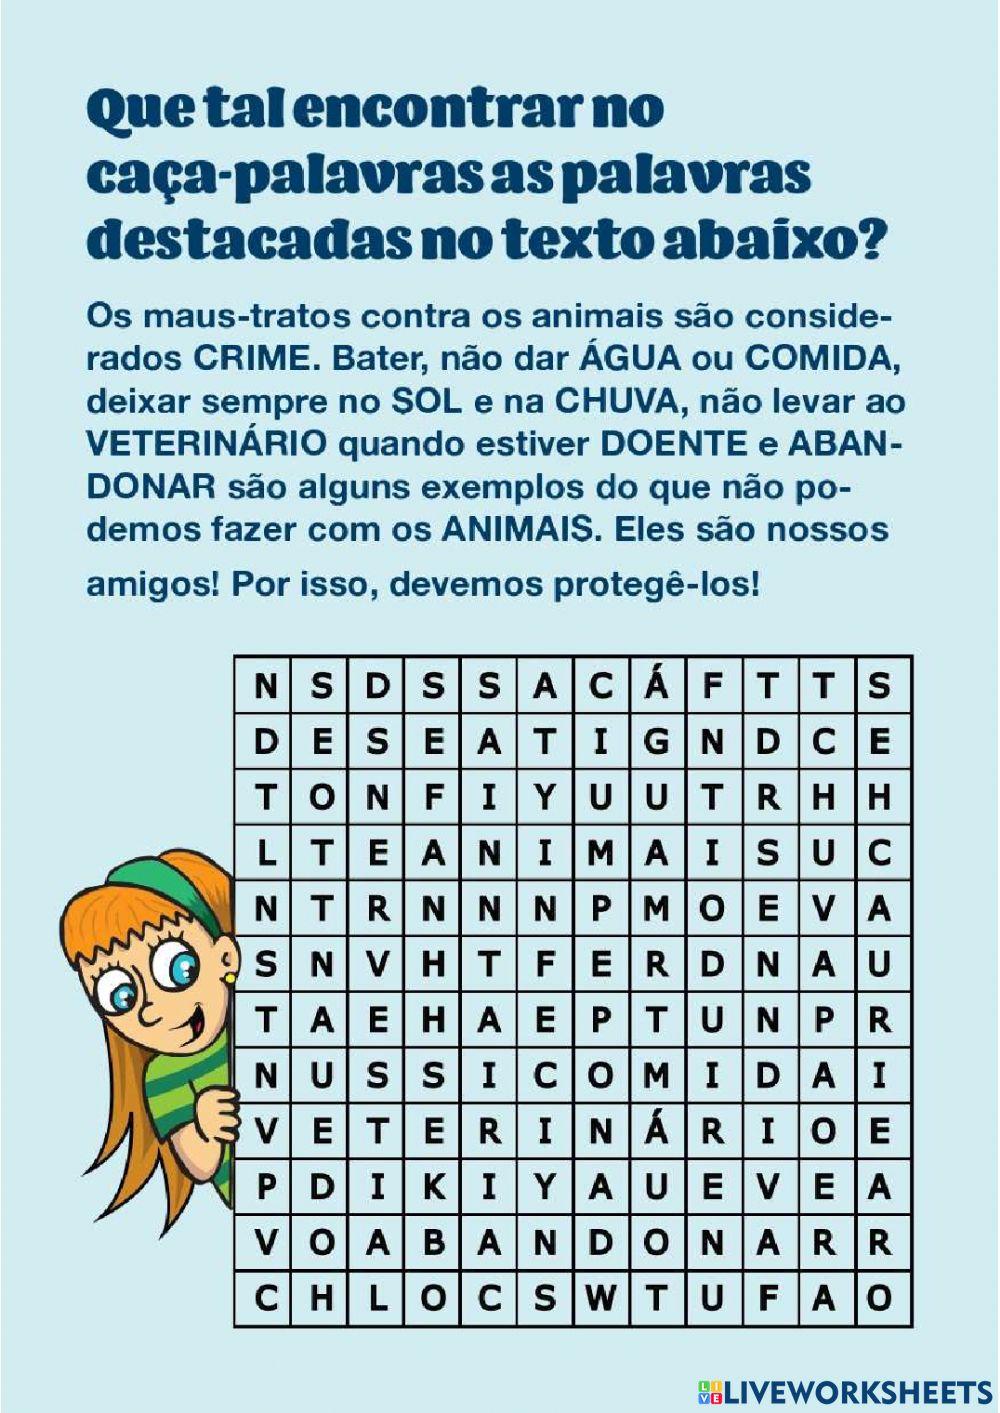 Caça Palavras online exercise for